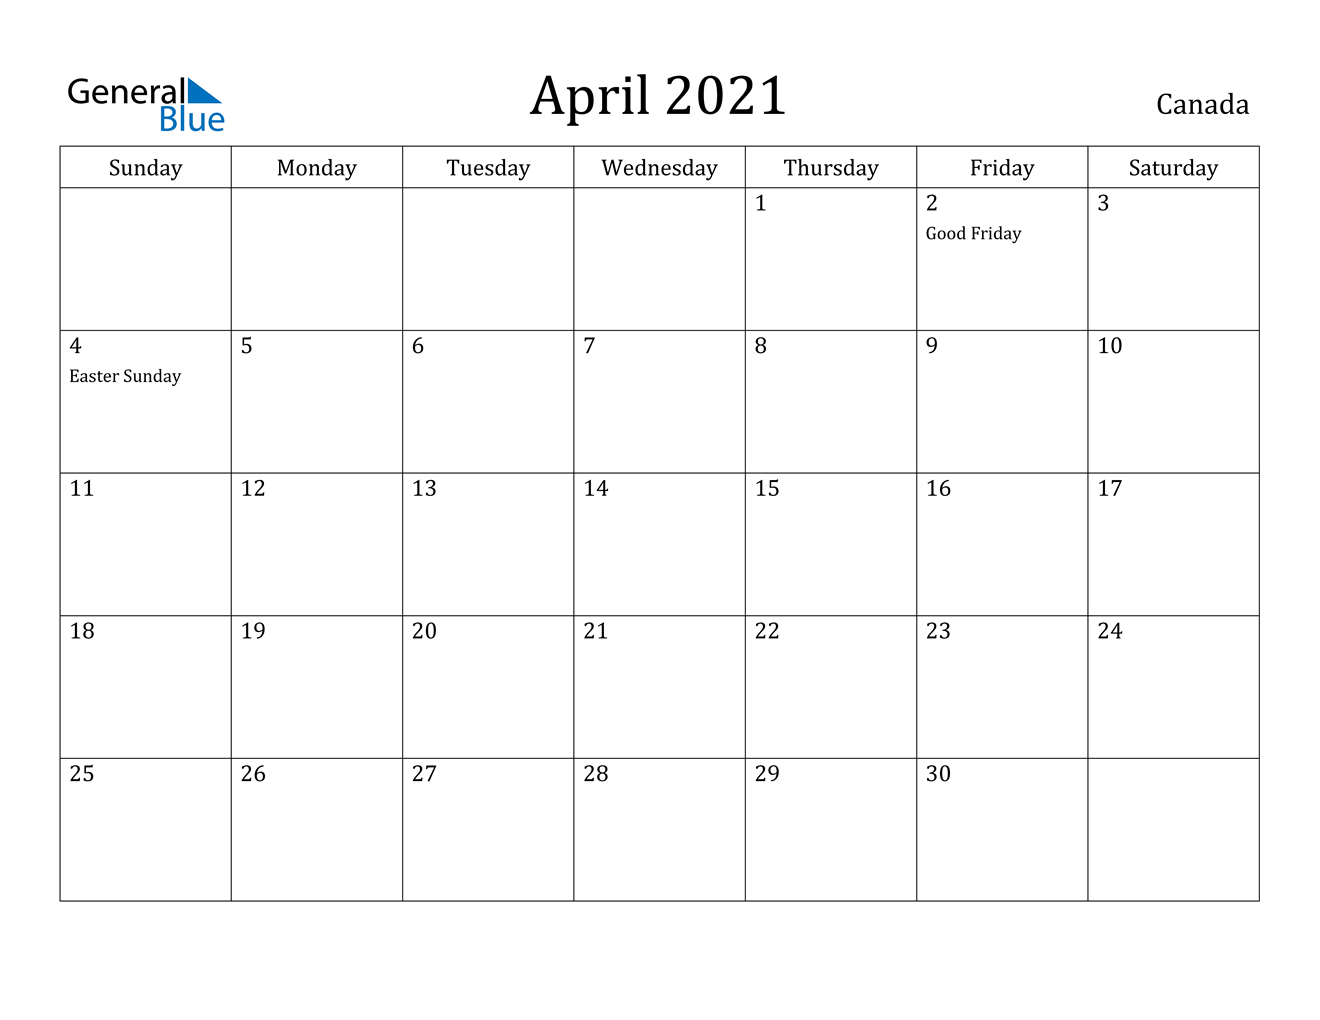 April 2021 Calendar - Canada